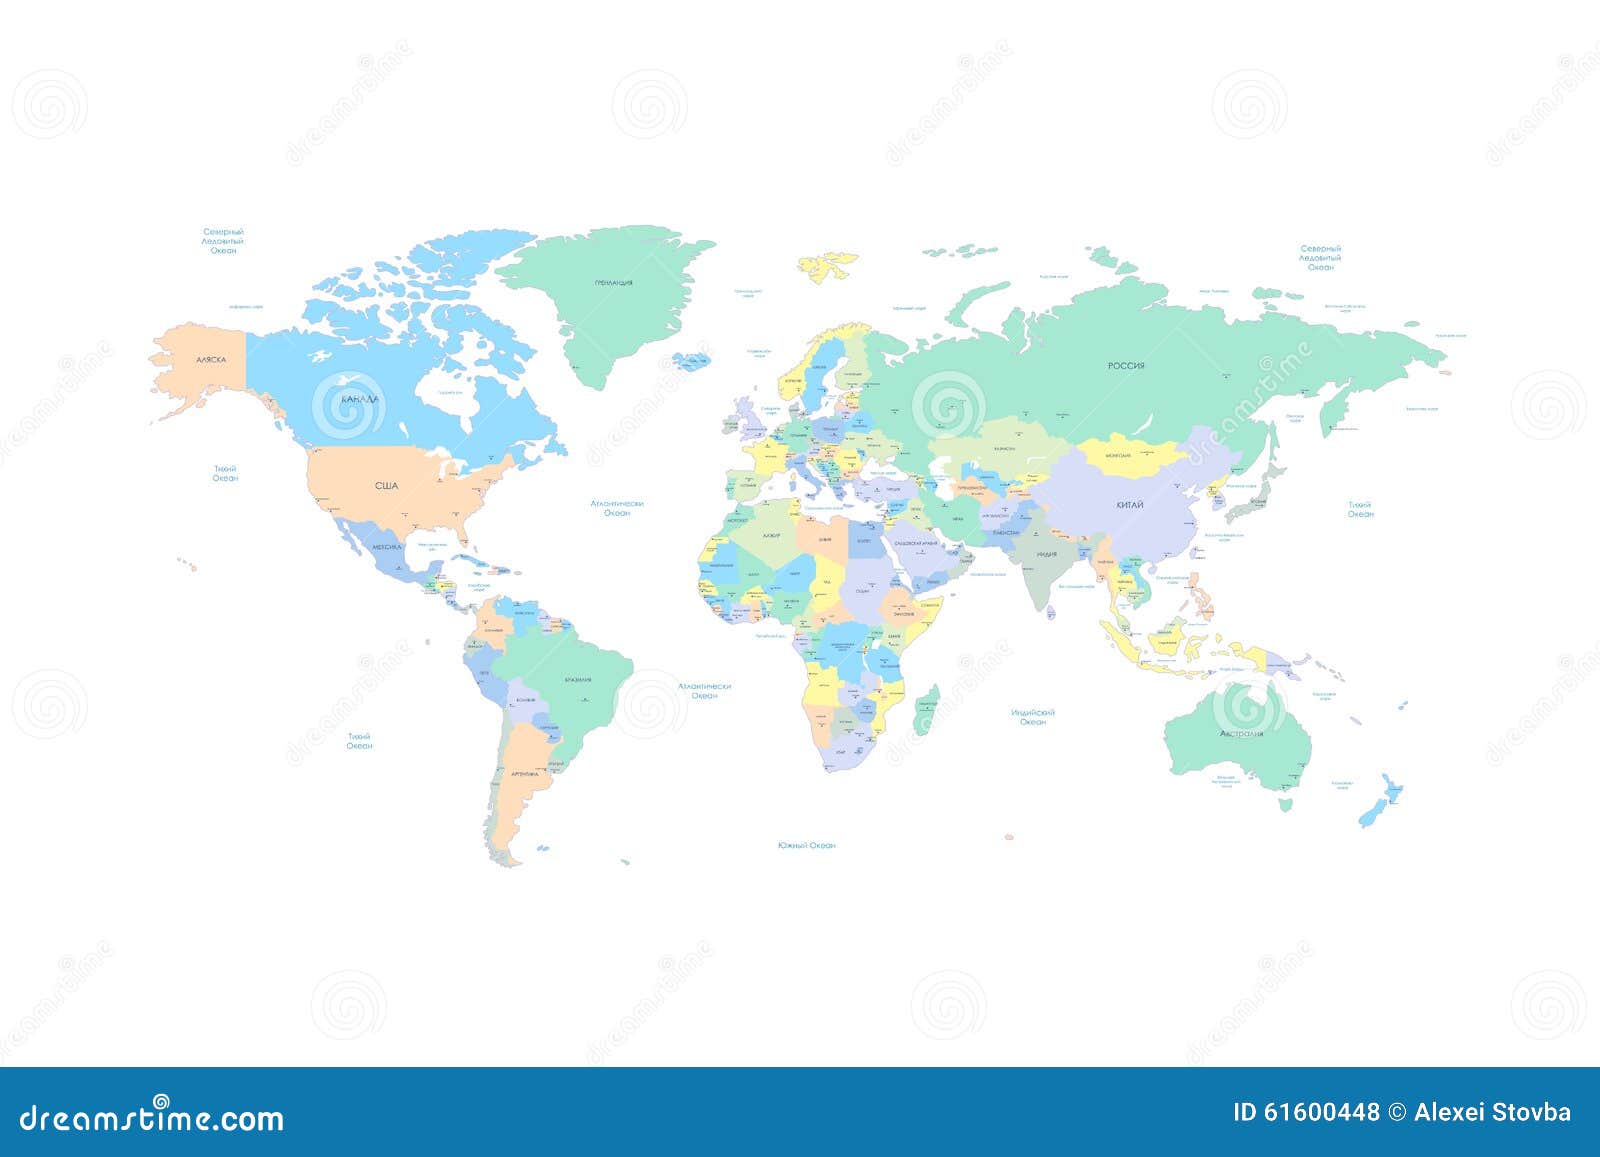 La Carte Du Monde Avec Des Pays Et Des Villes A énuméré